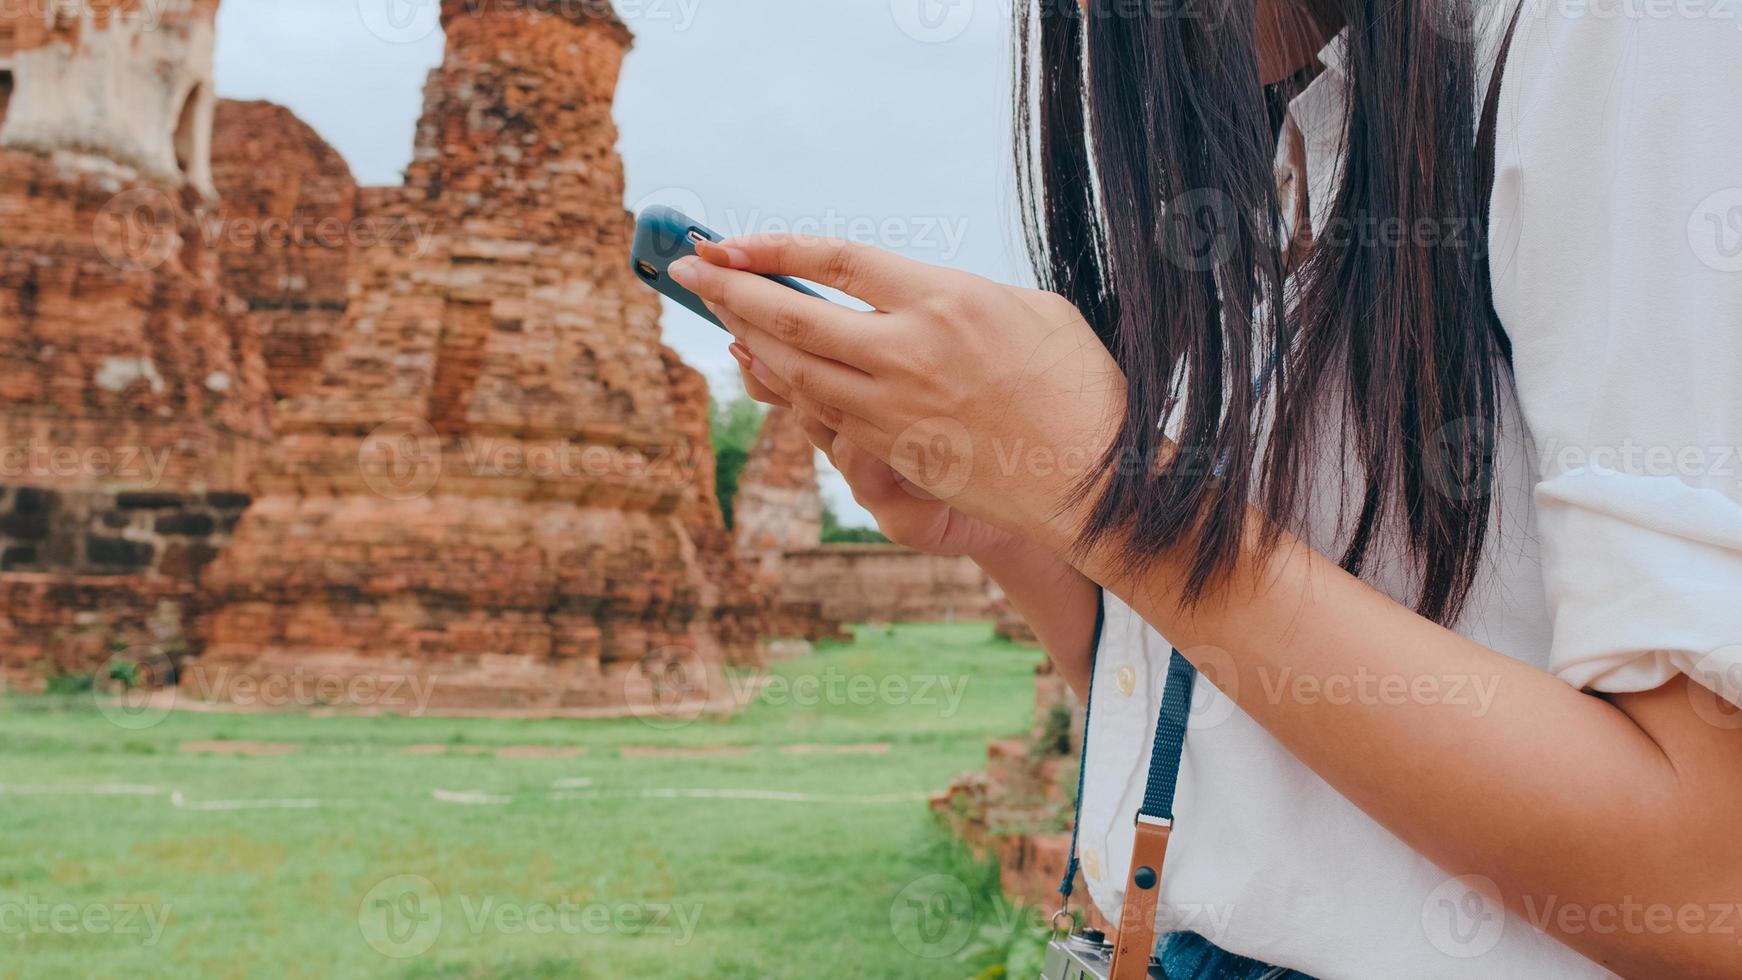 vrolijke mooie jonge Aziatische backpacker blogger vrouw casual met camera kijken naar foto op smartphone glimlach met blij gezicht reizen pagode in de oude stad, lifestyle toeristische reizen vakantie concept.